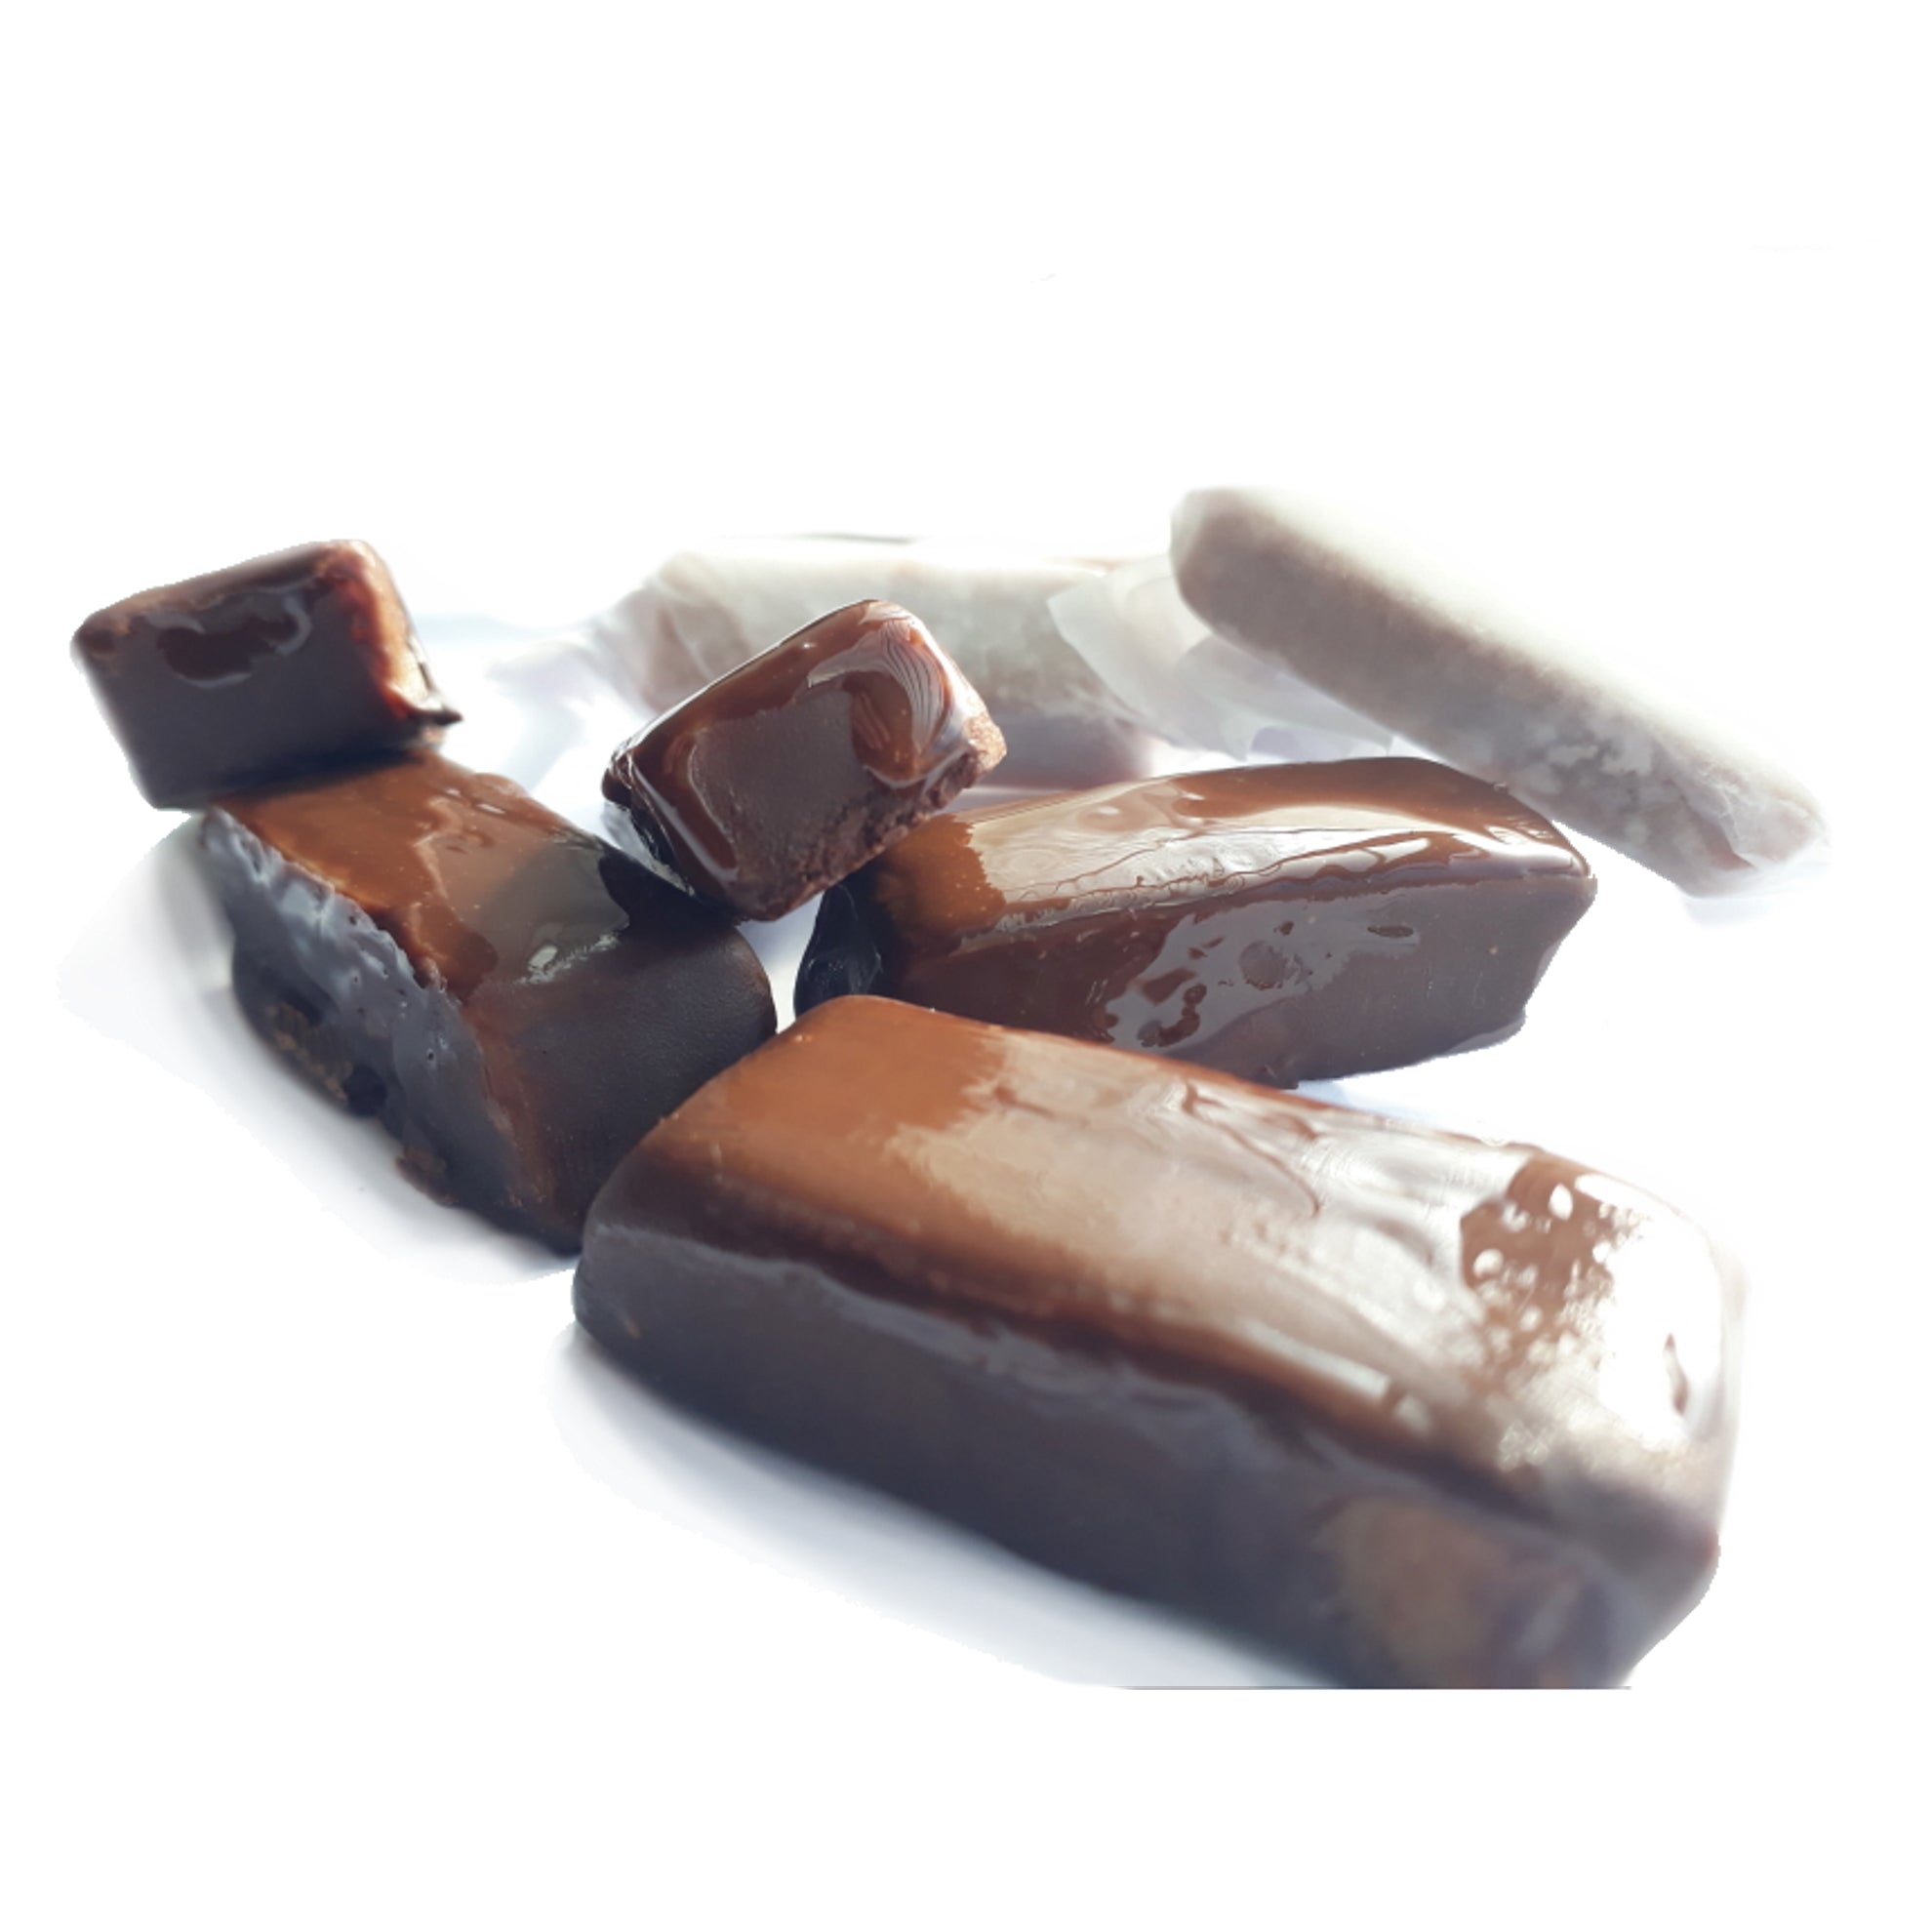 Calugas Bañadas En Chocolate Bitter 70% Cacao - 100gr